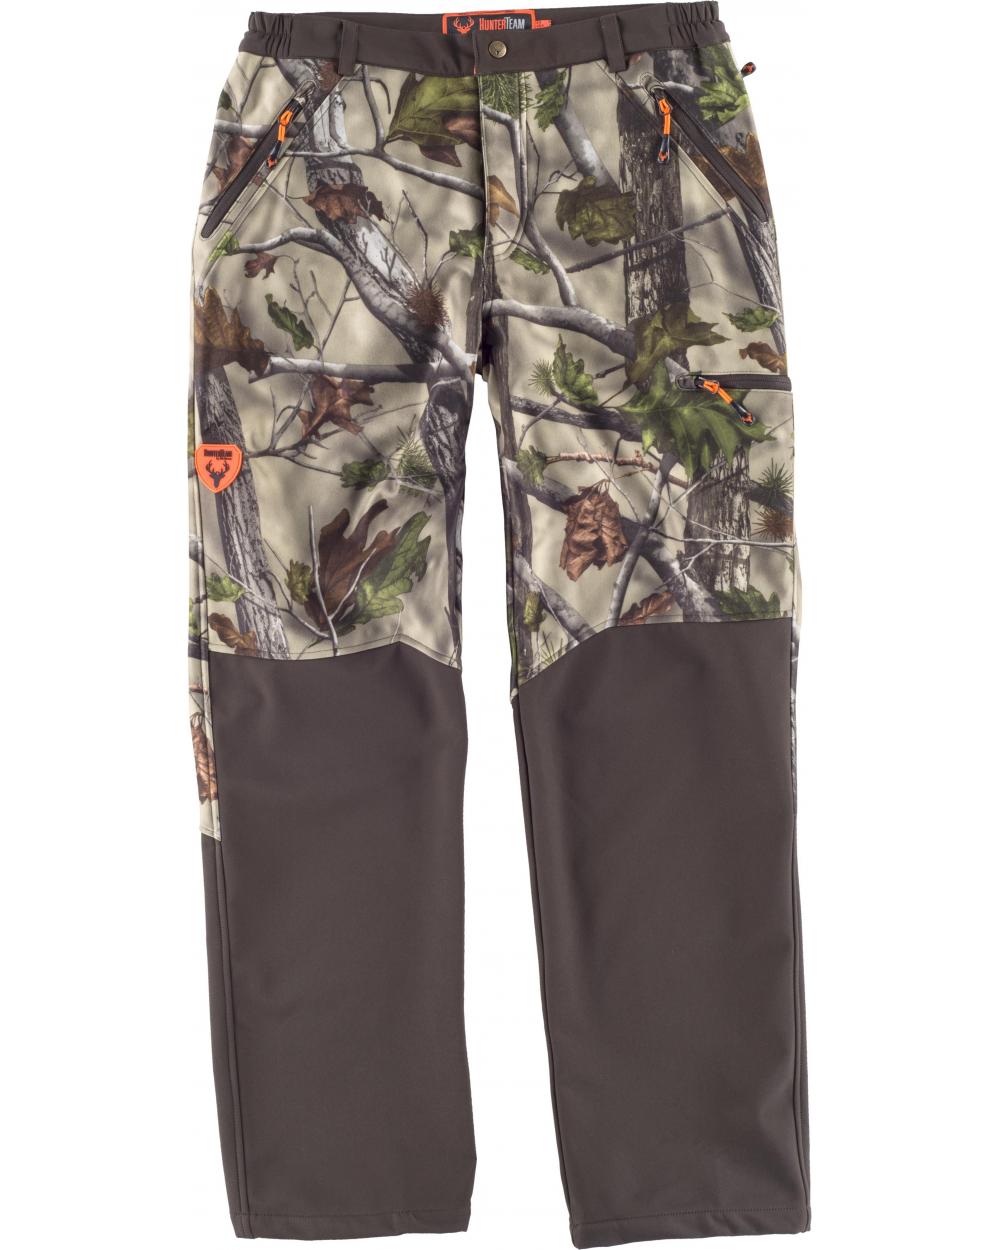 Comprar Pantalon Workshell de camuflaje S8365 Camuflaje Bosque Verde+Marrón online bataro delante